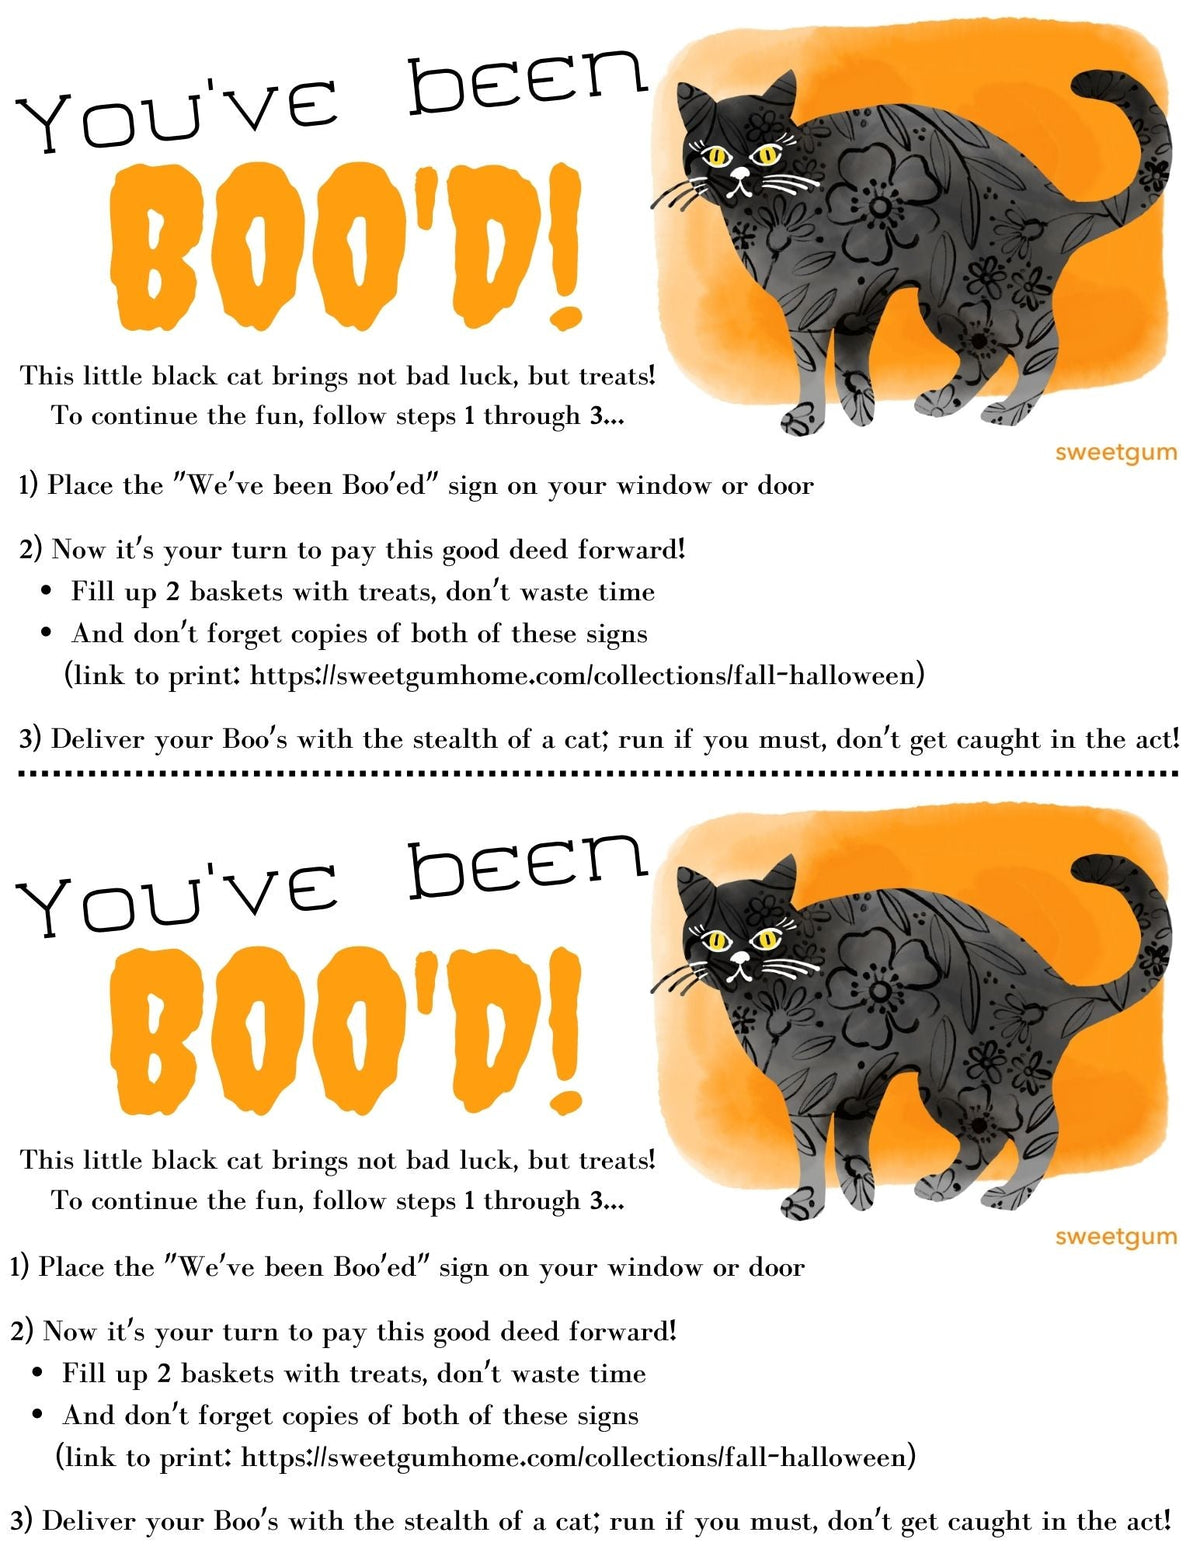 Halloween Cat &quot;Boo!&quot; Digital Download Recipe sweetgum textiles company, LLC 